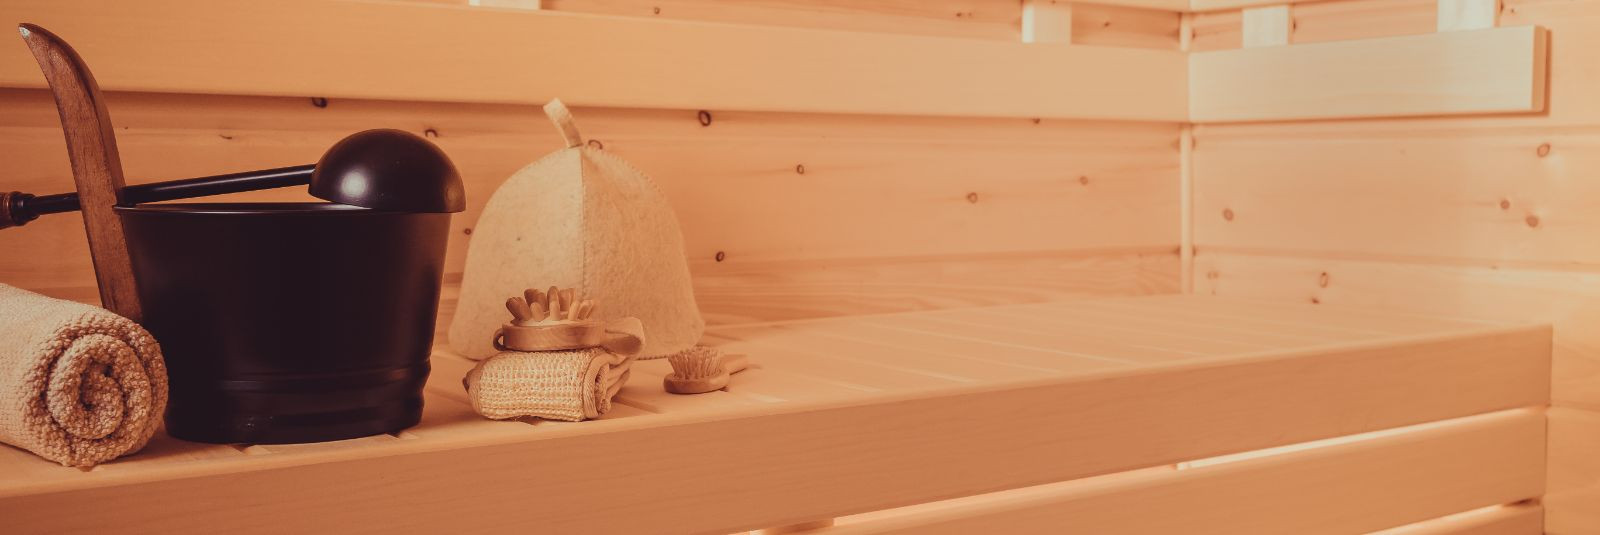 Mobiilne haagissaun, mille Tiny Sauna Rent on turule toonud, on tõeline pärli saunaelamuste maailmas. Mahutades mugavalt kuni 8 inimest, pakub see erakordset võ